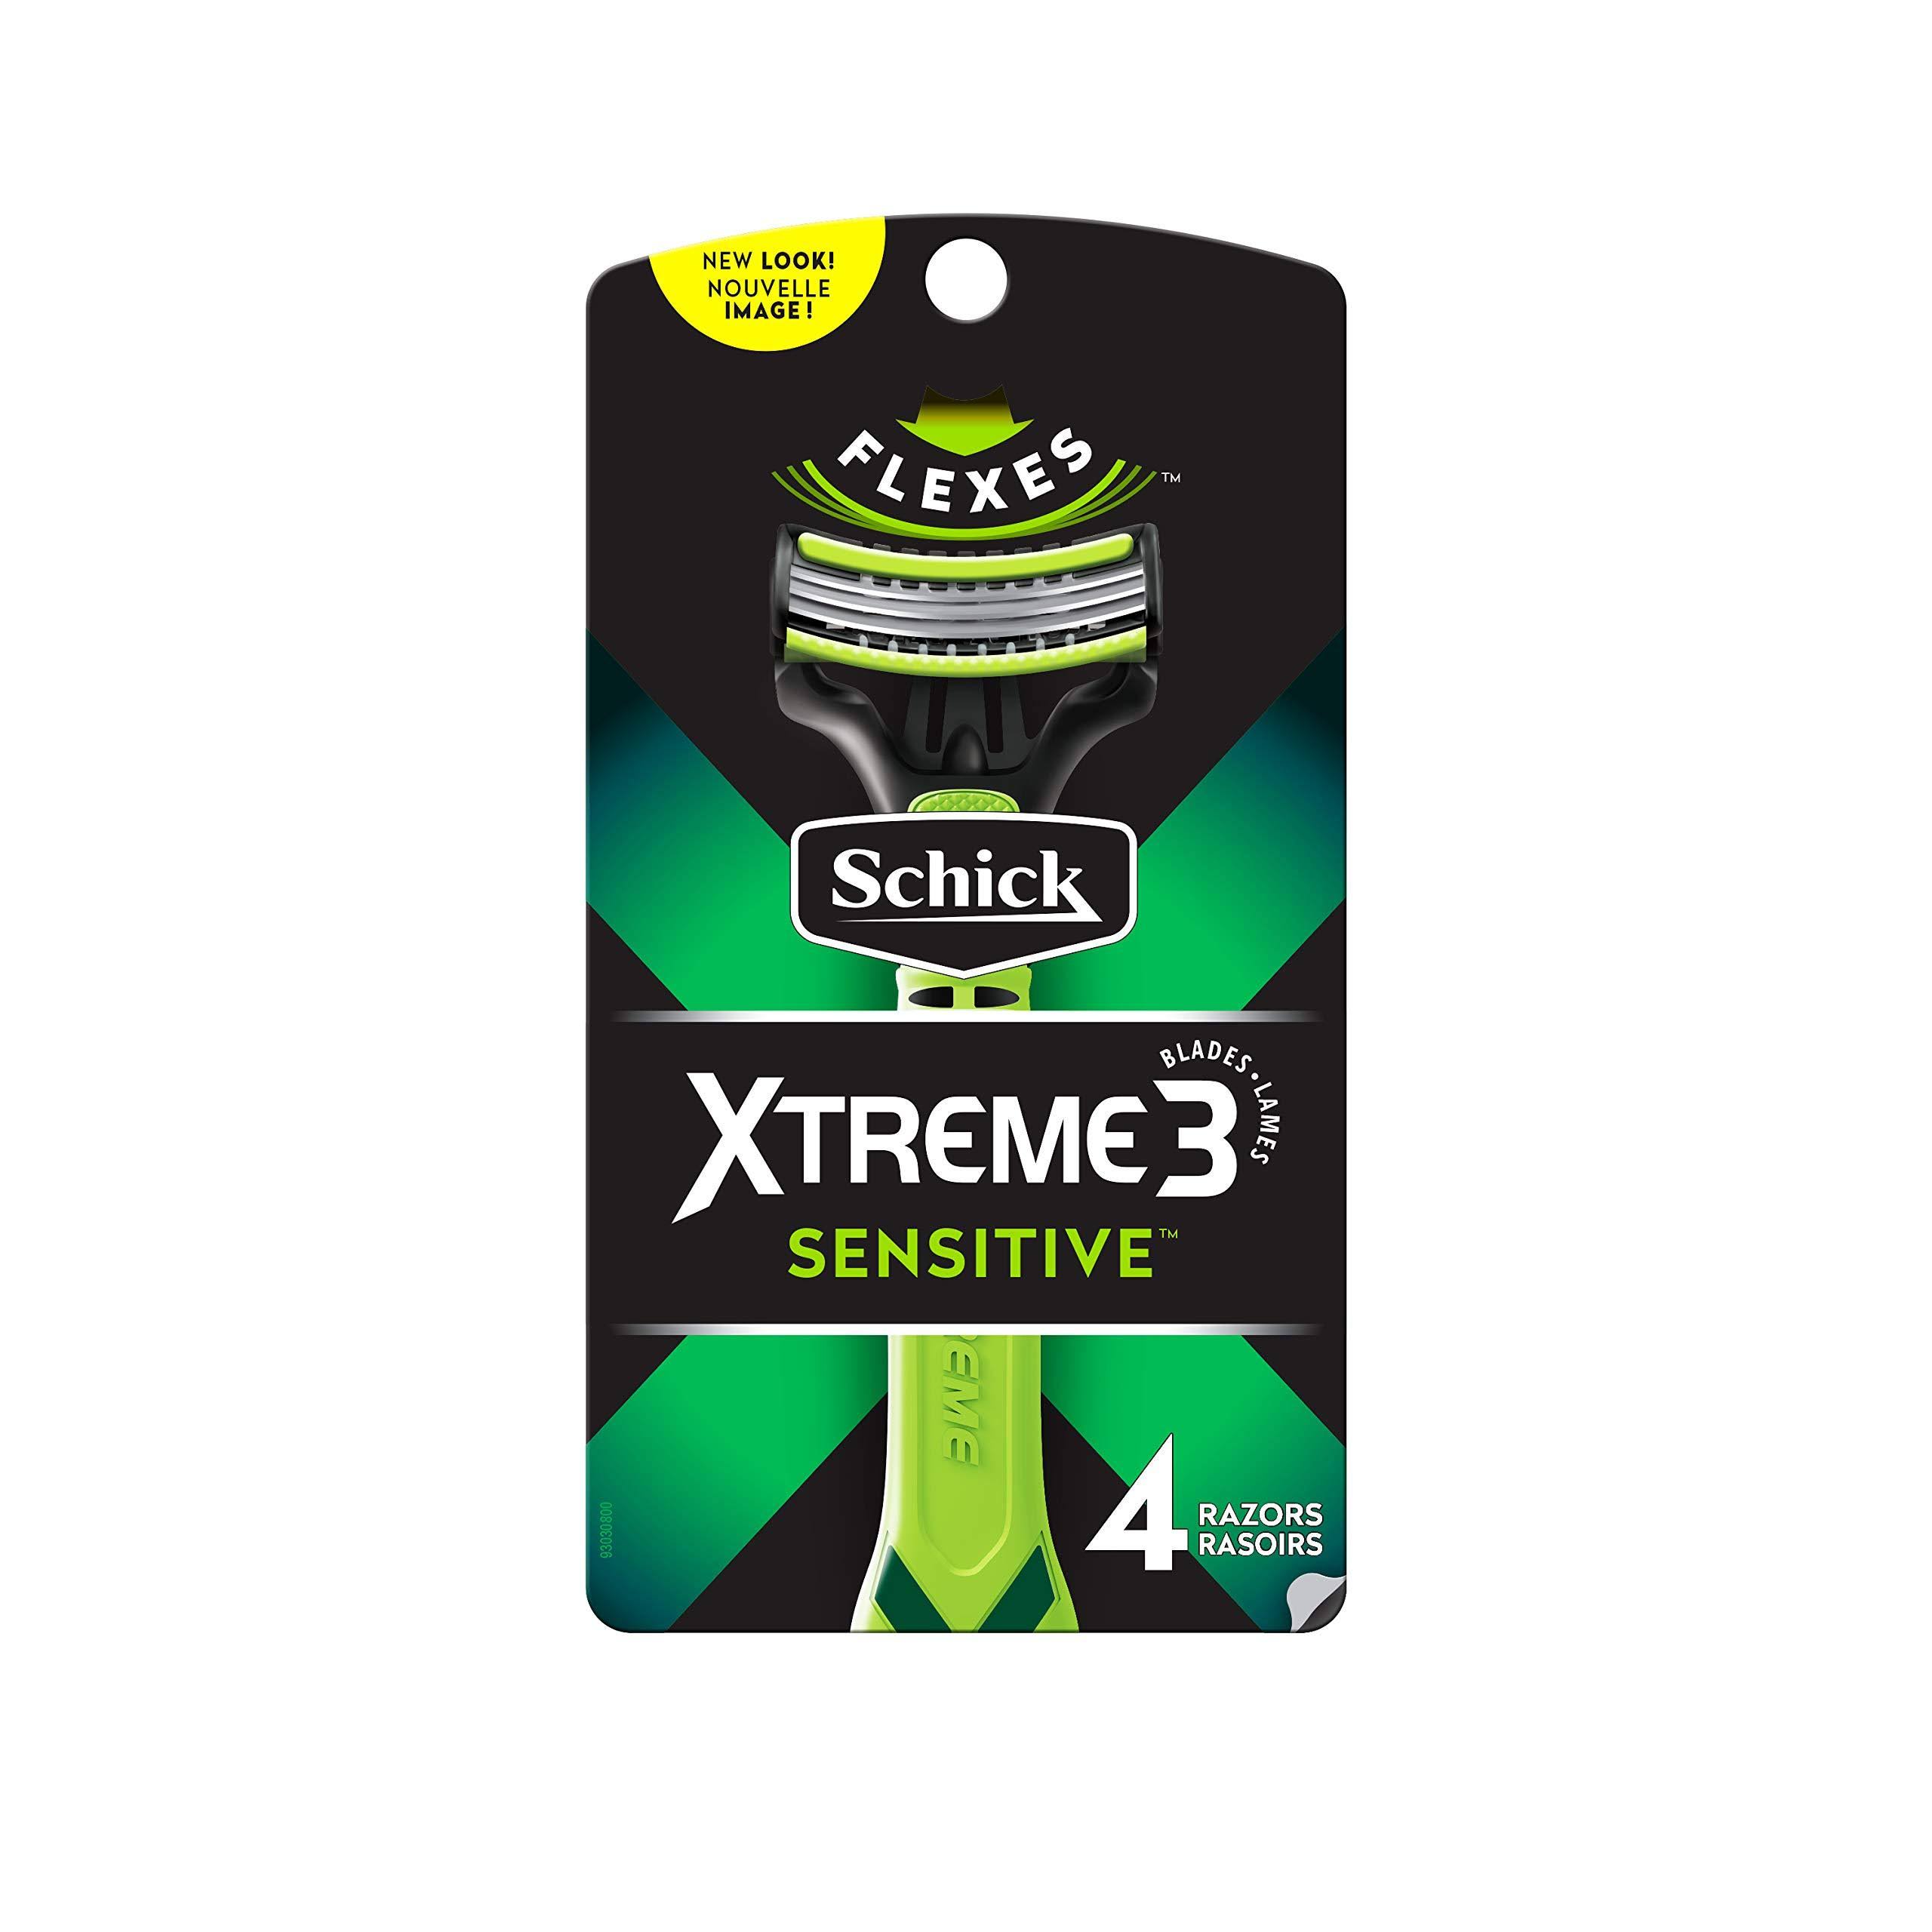 Schick Xtreme 3 Senstive Skin Disposable Razors - 4 Razors